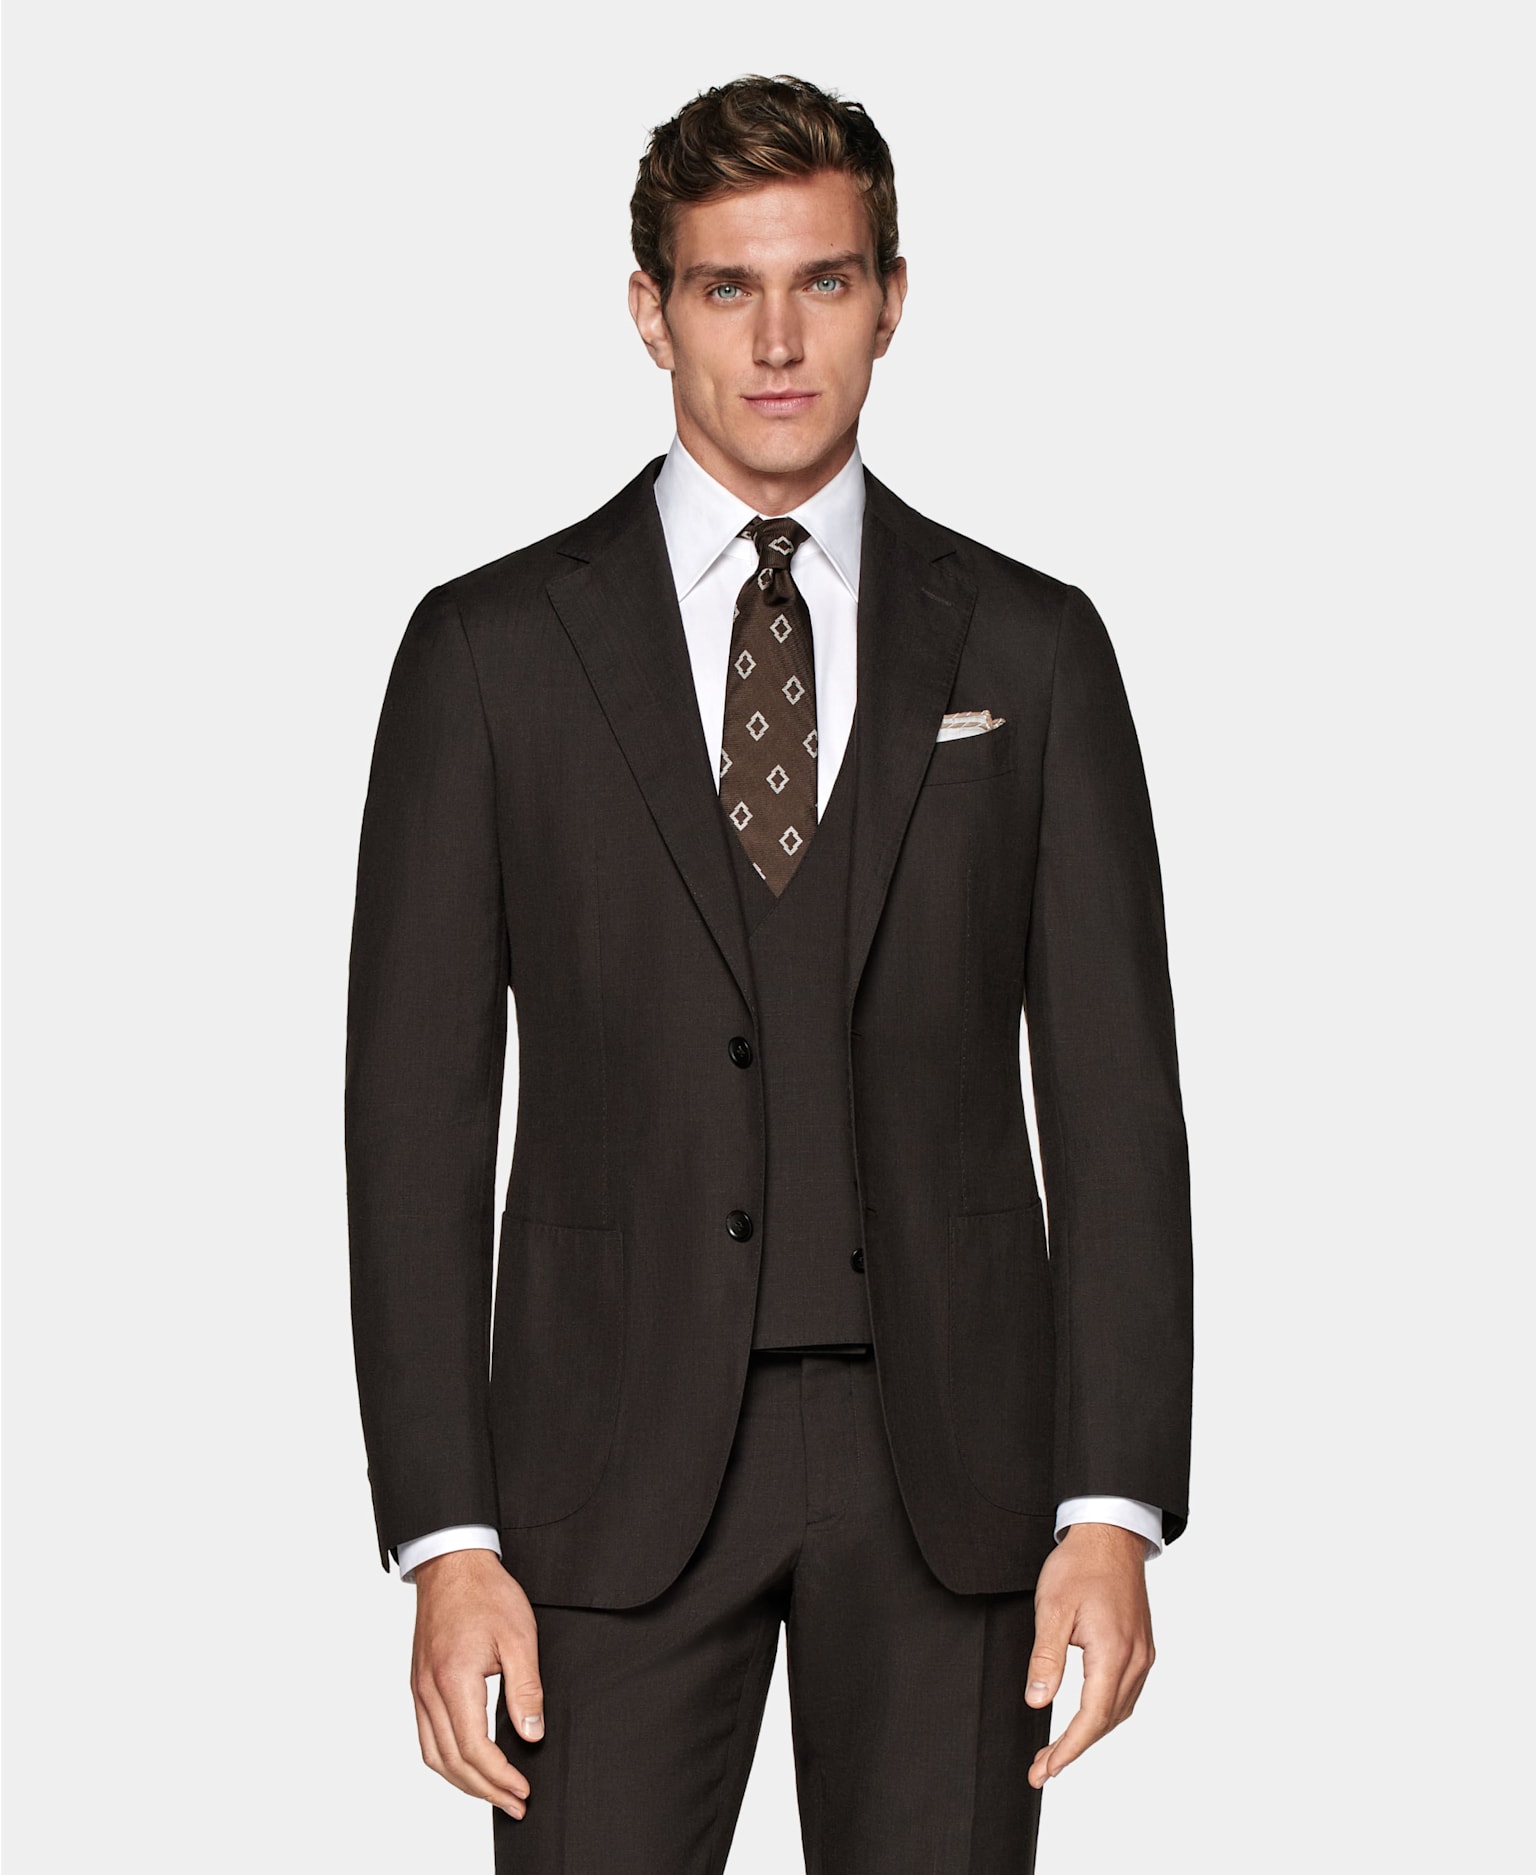 Traje marrón de 3 piezas con camisa blanca, corbata marrón estampada y pañuelo de bolsillo.